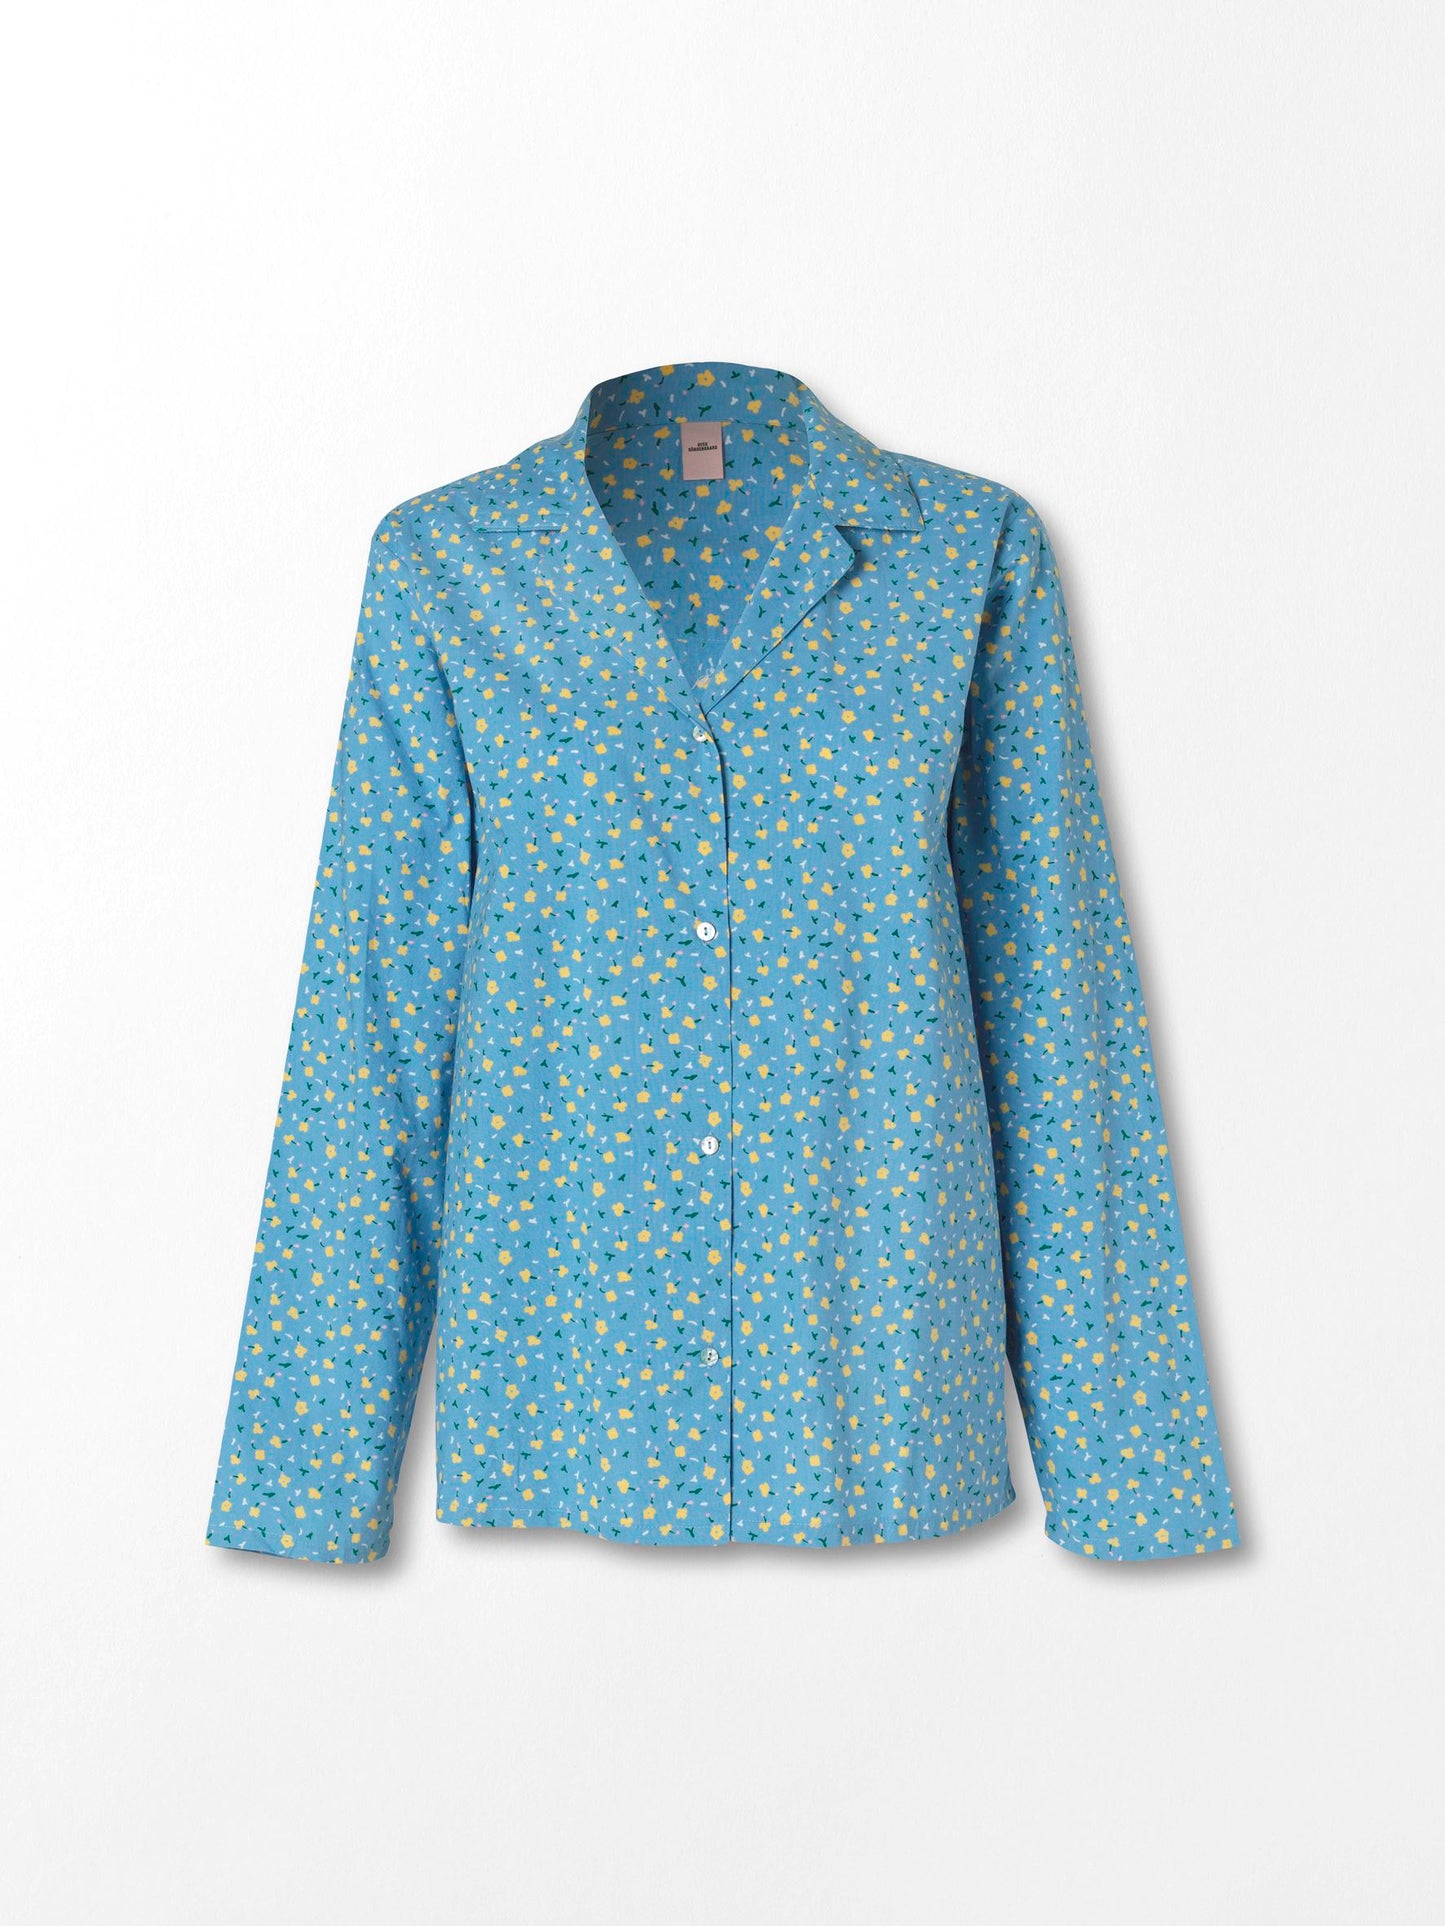 Becksöndergaard, Picola Pyjamas Set - Provincial Blue, archive, sale, sale, archive